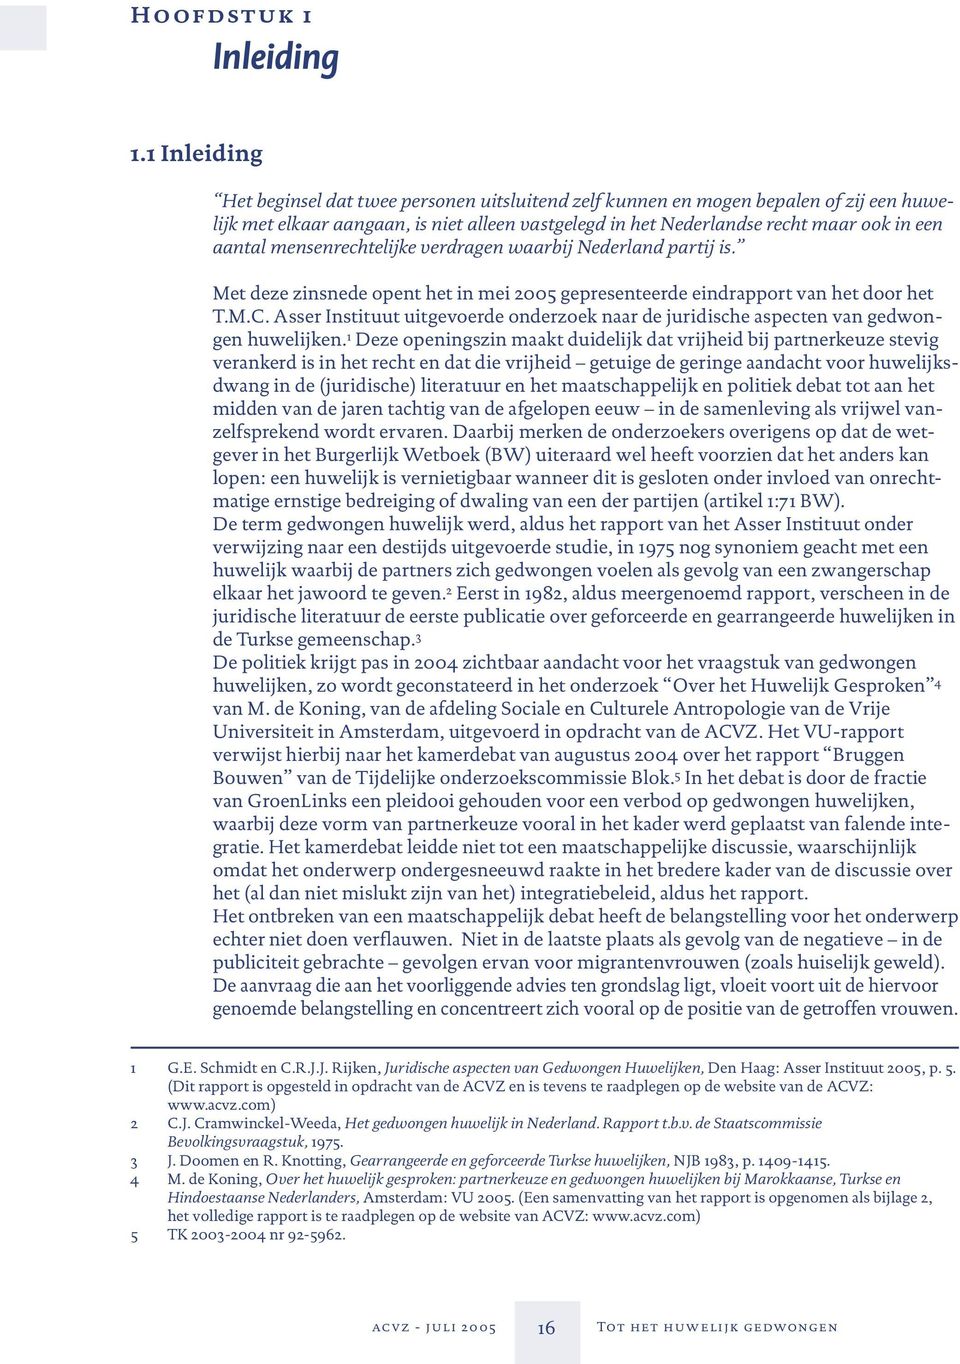 mensenrechtelijke verdragen waarbij Nederland partij is. Met deze zinsnede opent het in mei 2005 gepresenteerde eindrapport van het door het T.M.C.